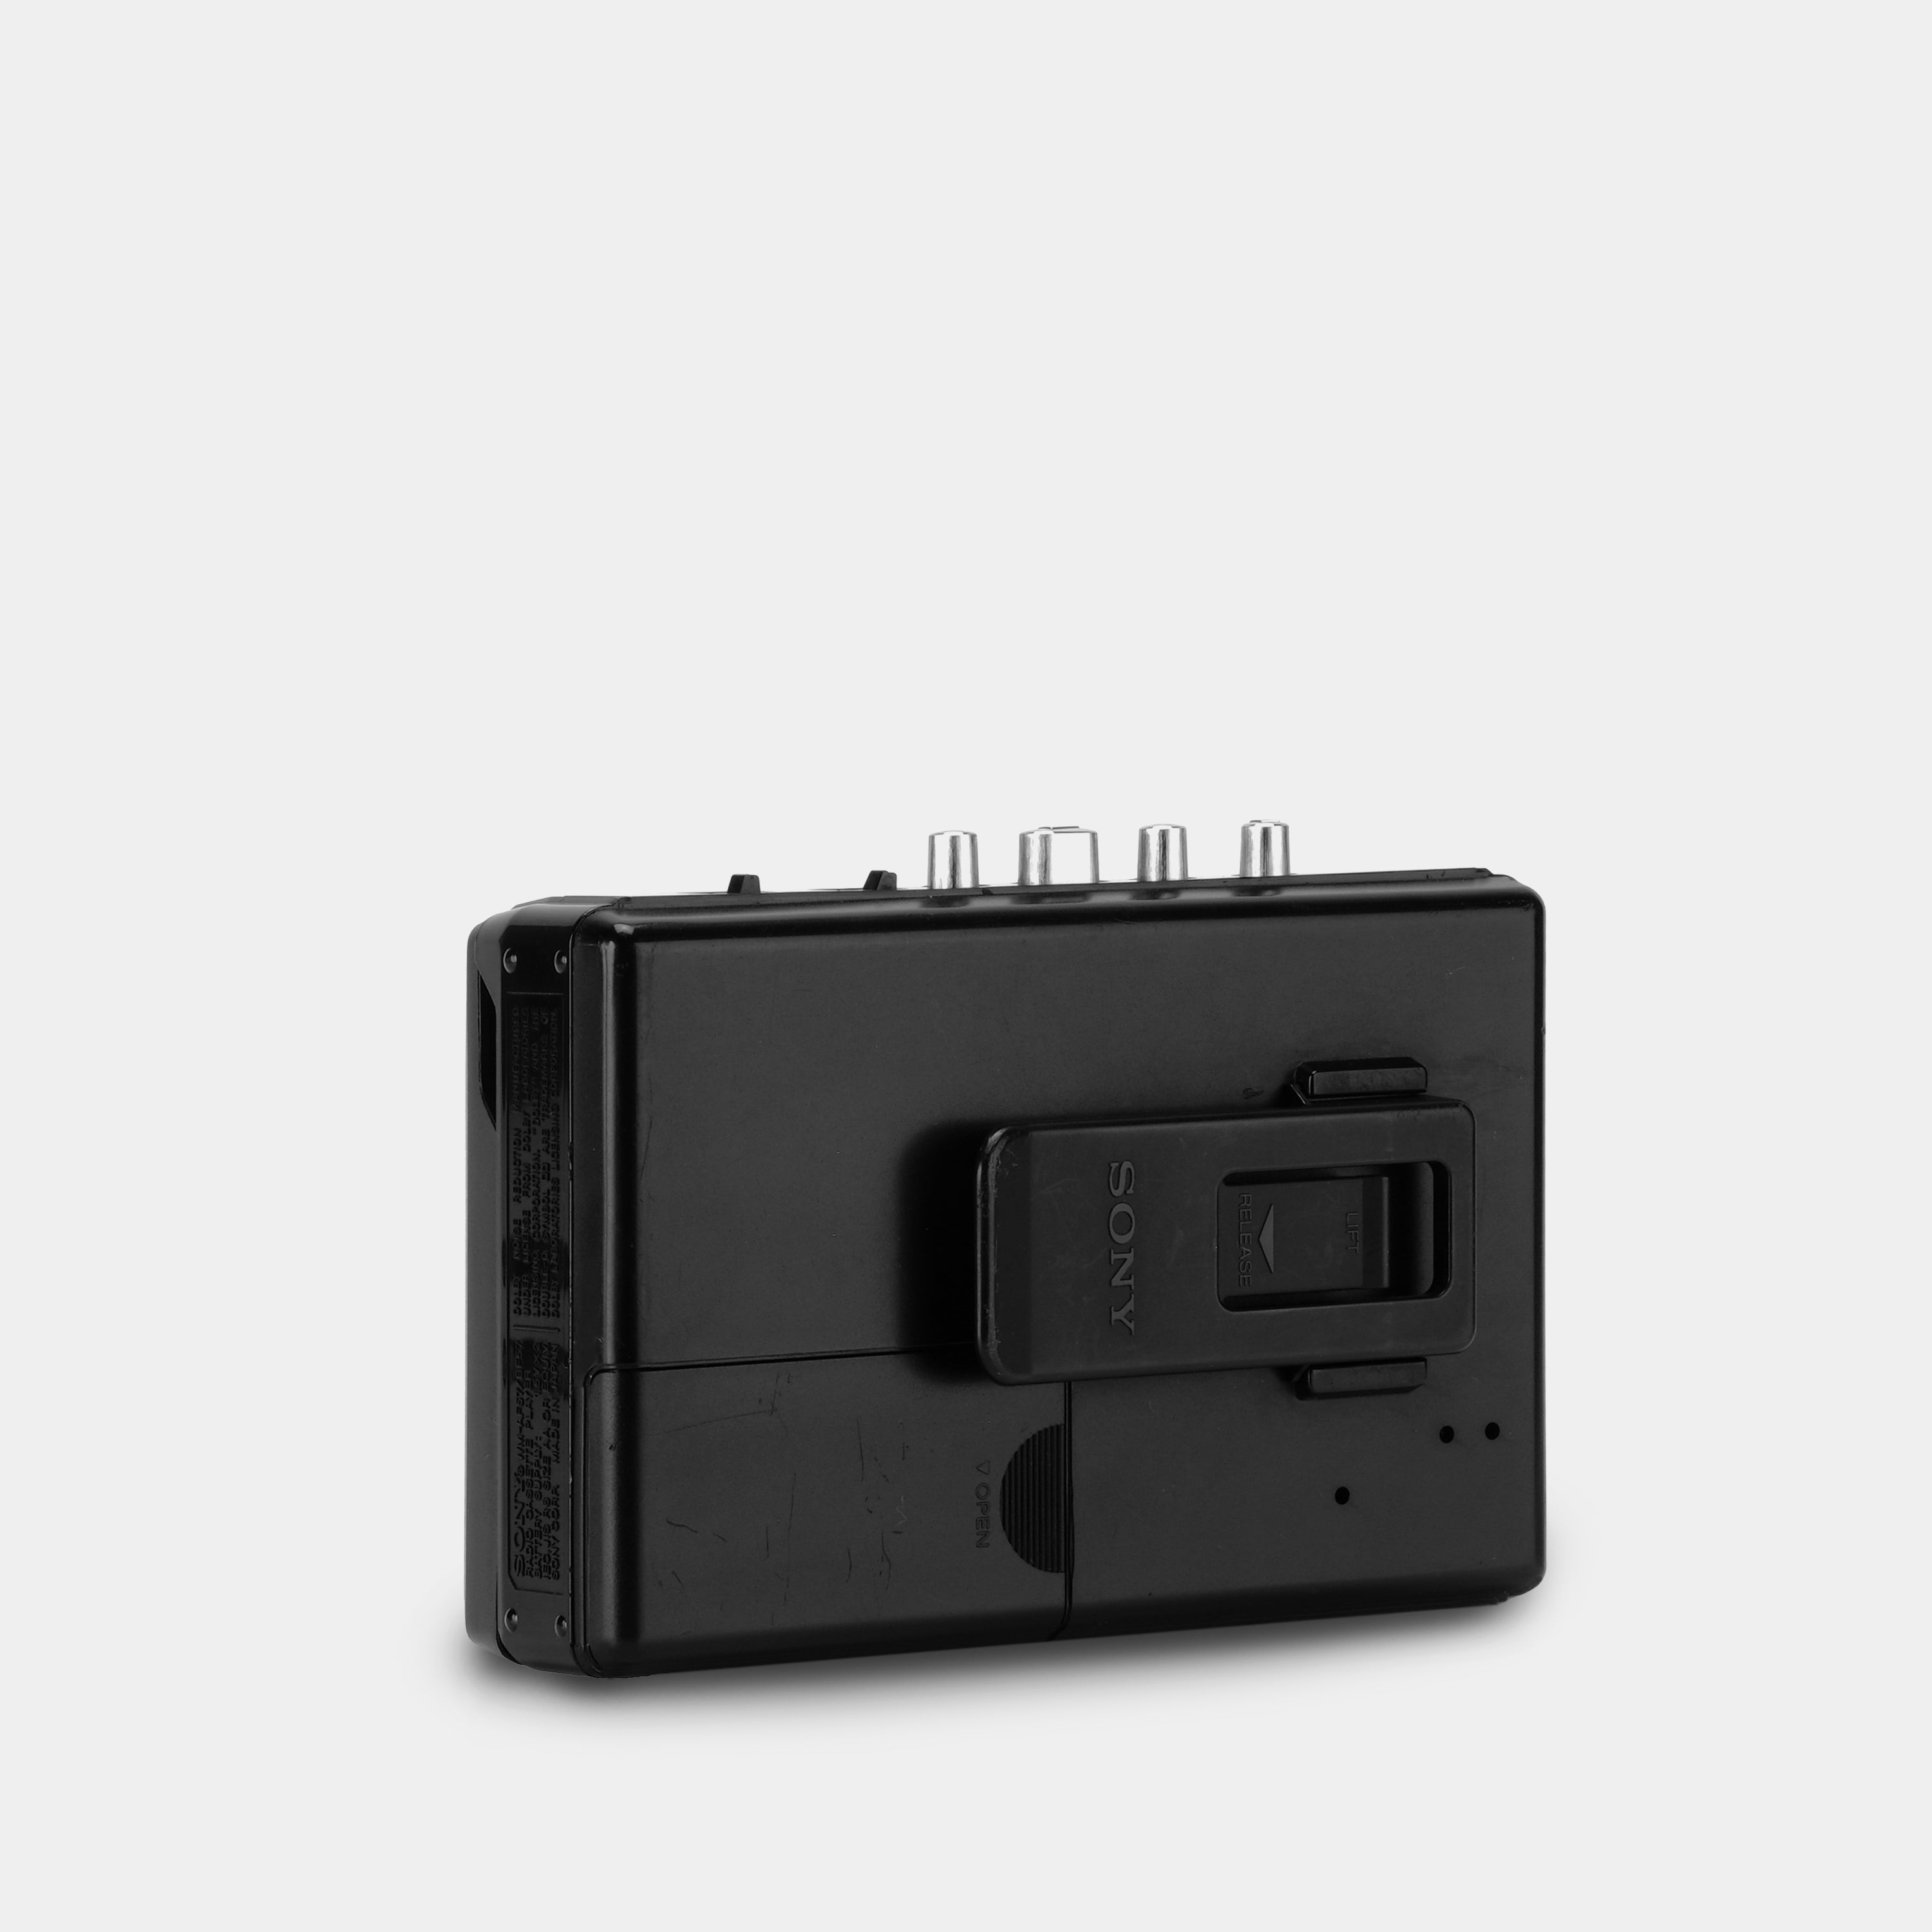 Sony Walkman WM-AF57/BF57 MEGA BASS AM/FM Radio Cassette Player